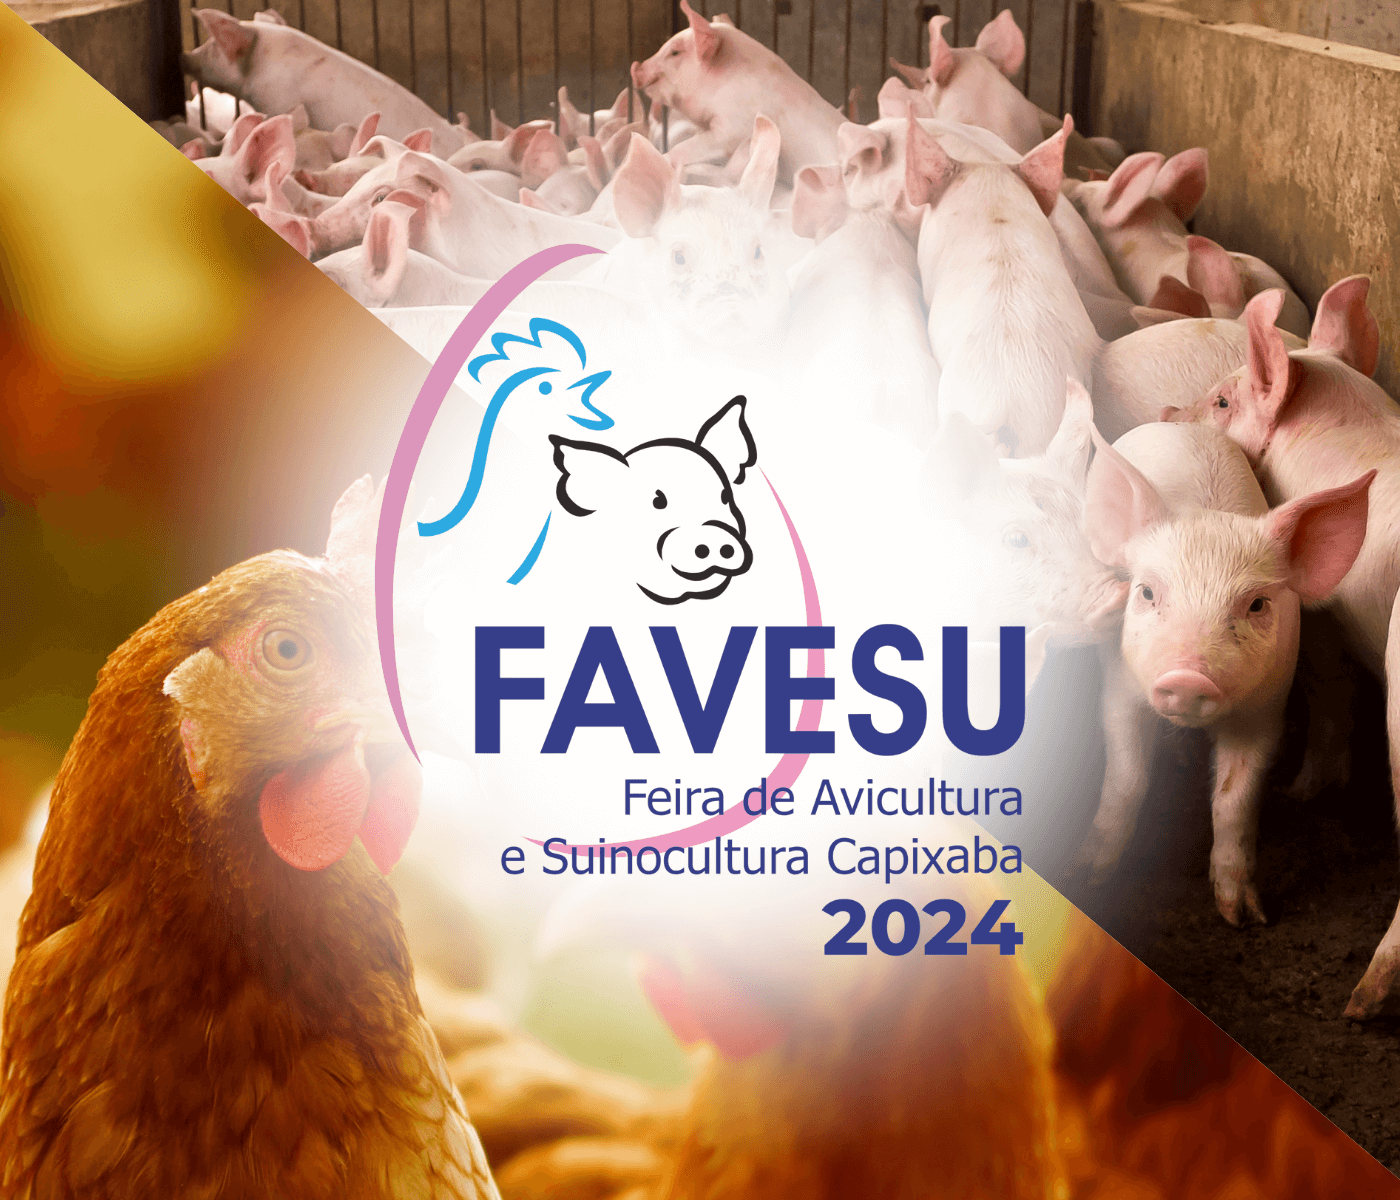 FAVESU 2024: A maior feira da suinocultura e avicultura capixaba acontece em junho